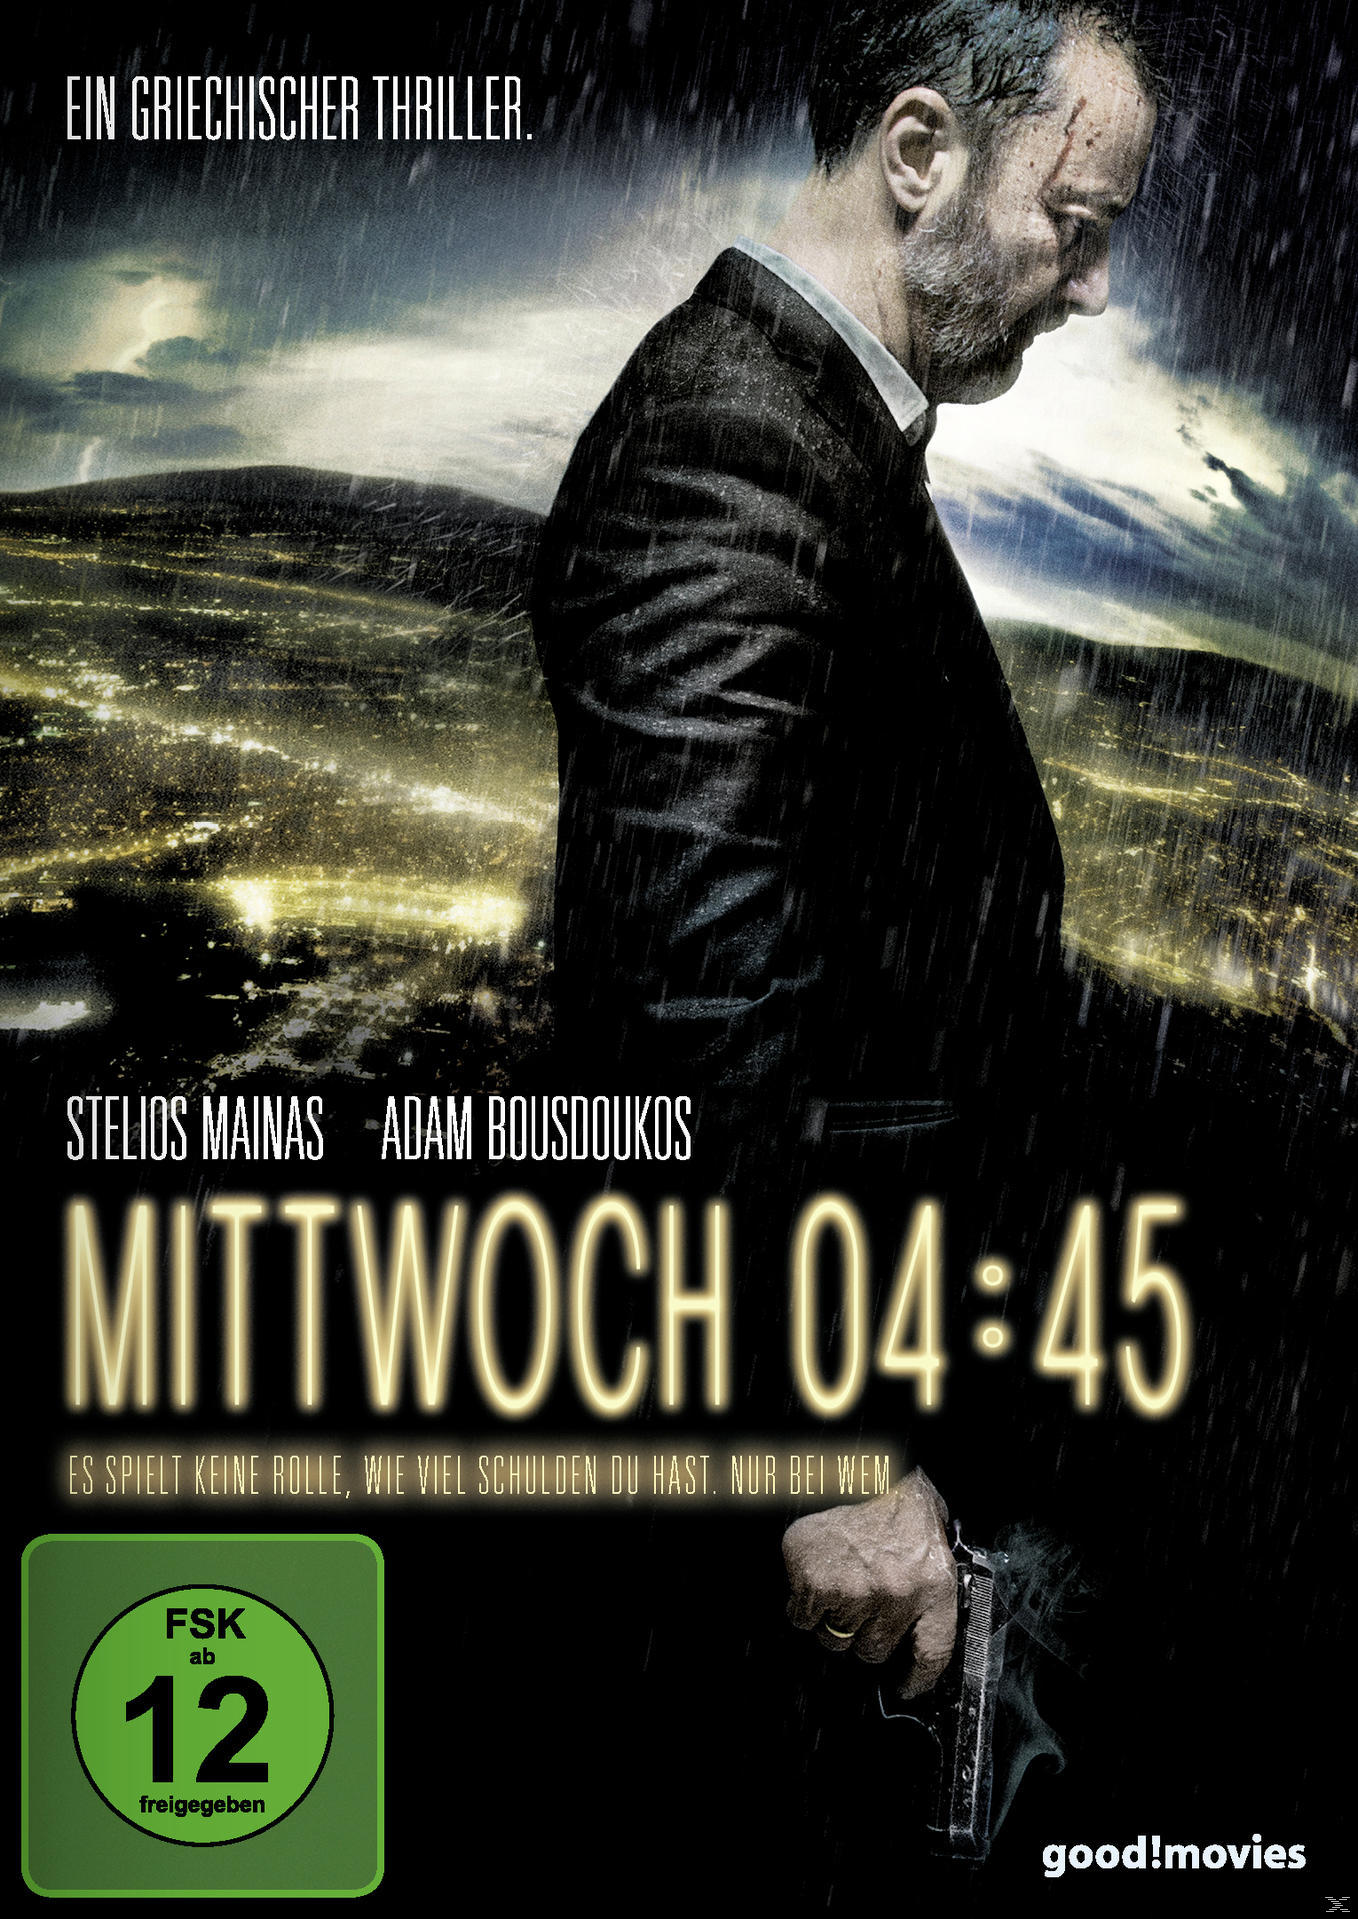 DVD Mittwoch 04:45